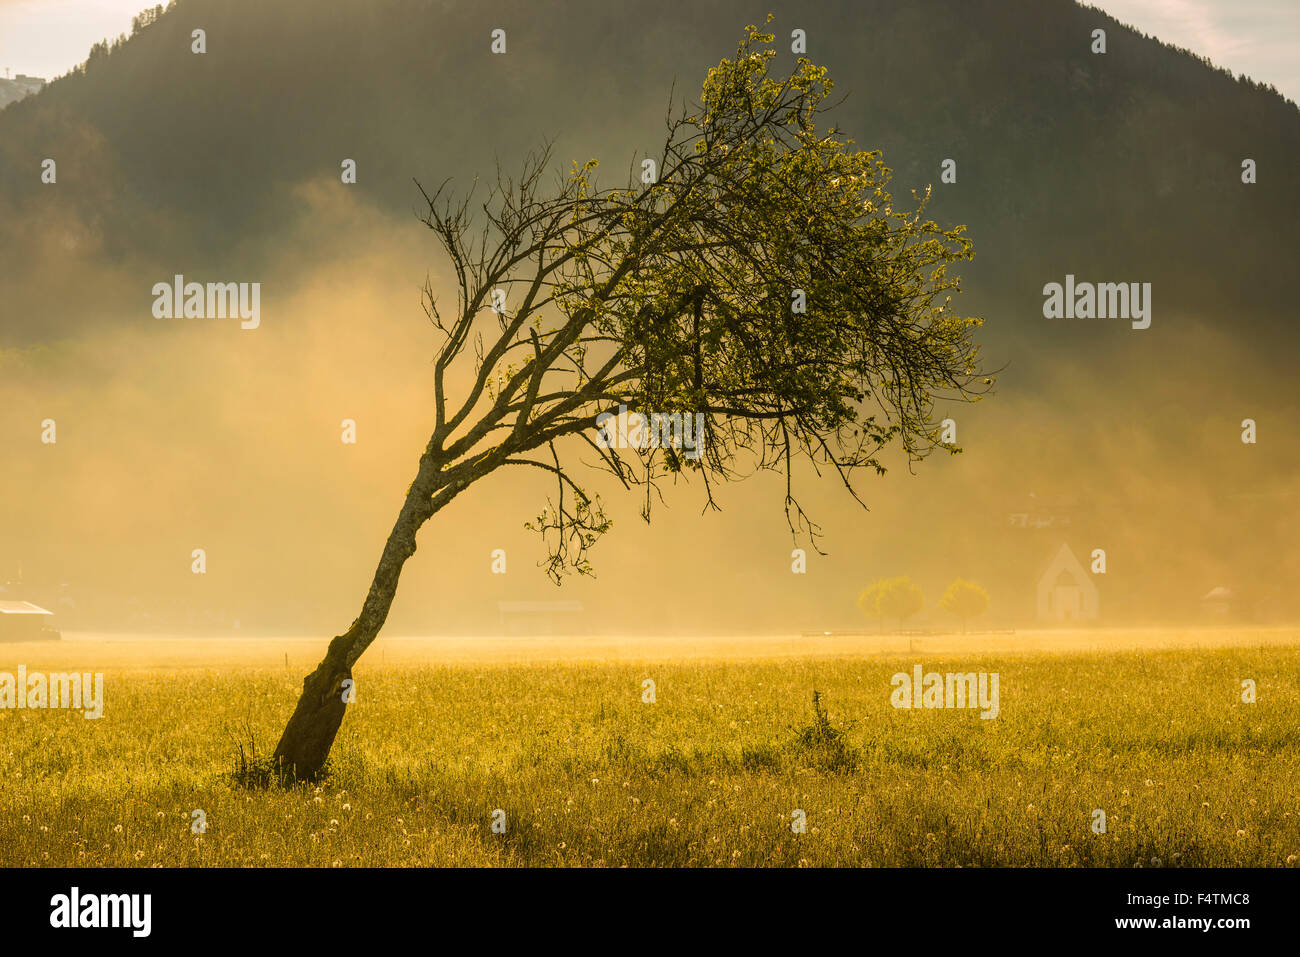 Allgäu, tree, Bavaria, beech, Germany, individually, tree, Europe, Fagus sylvatica, early fog, stoopedly, gnarledly, gruffly, fo Stock Photo